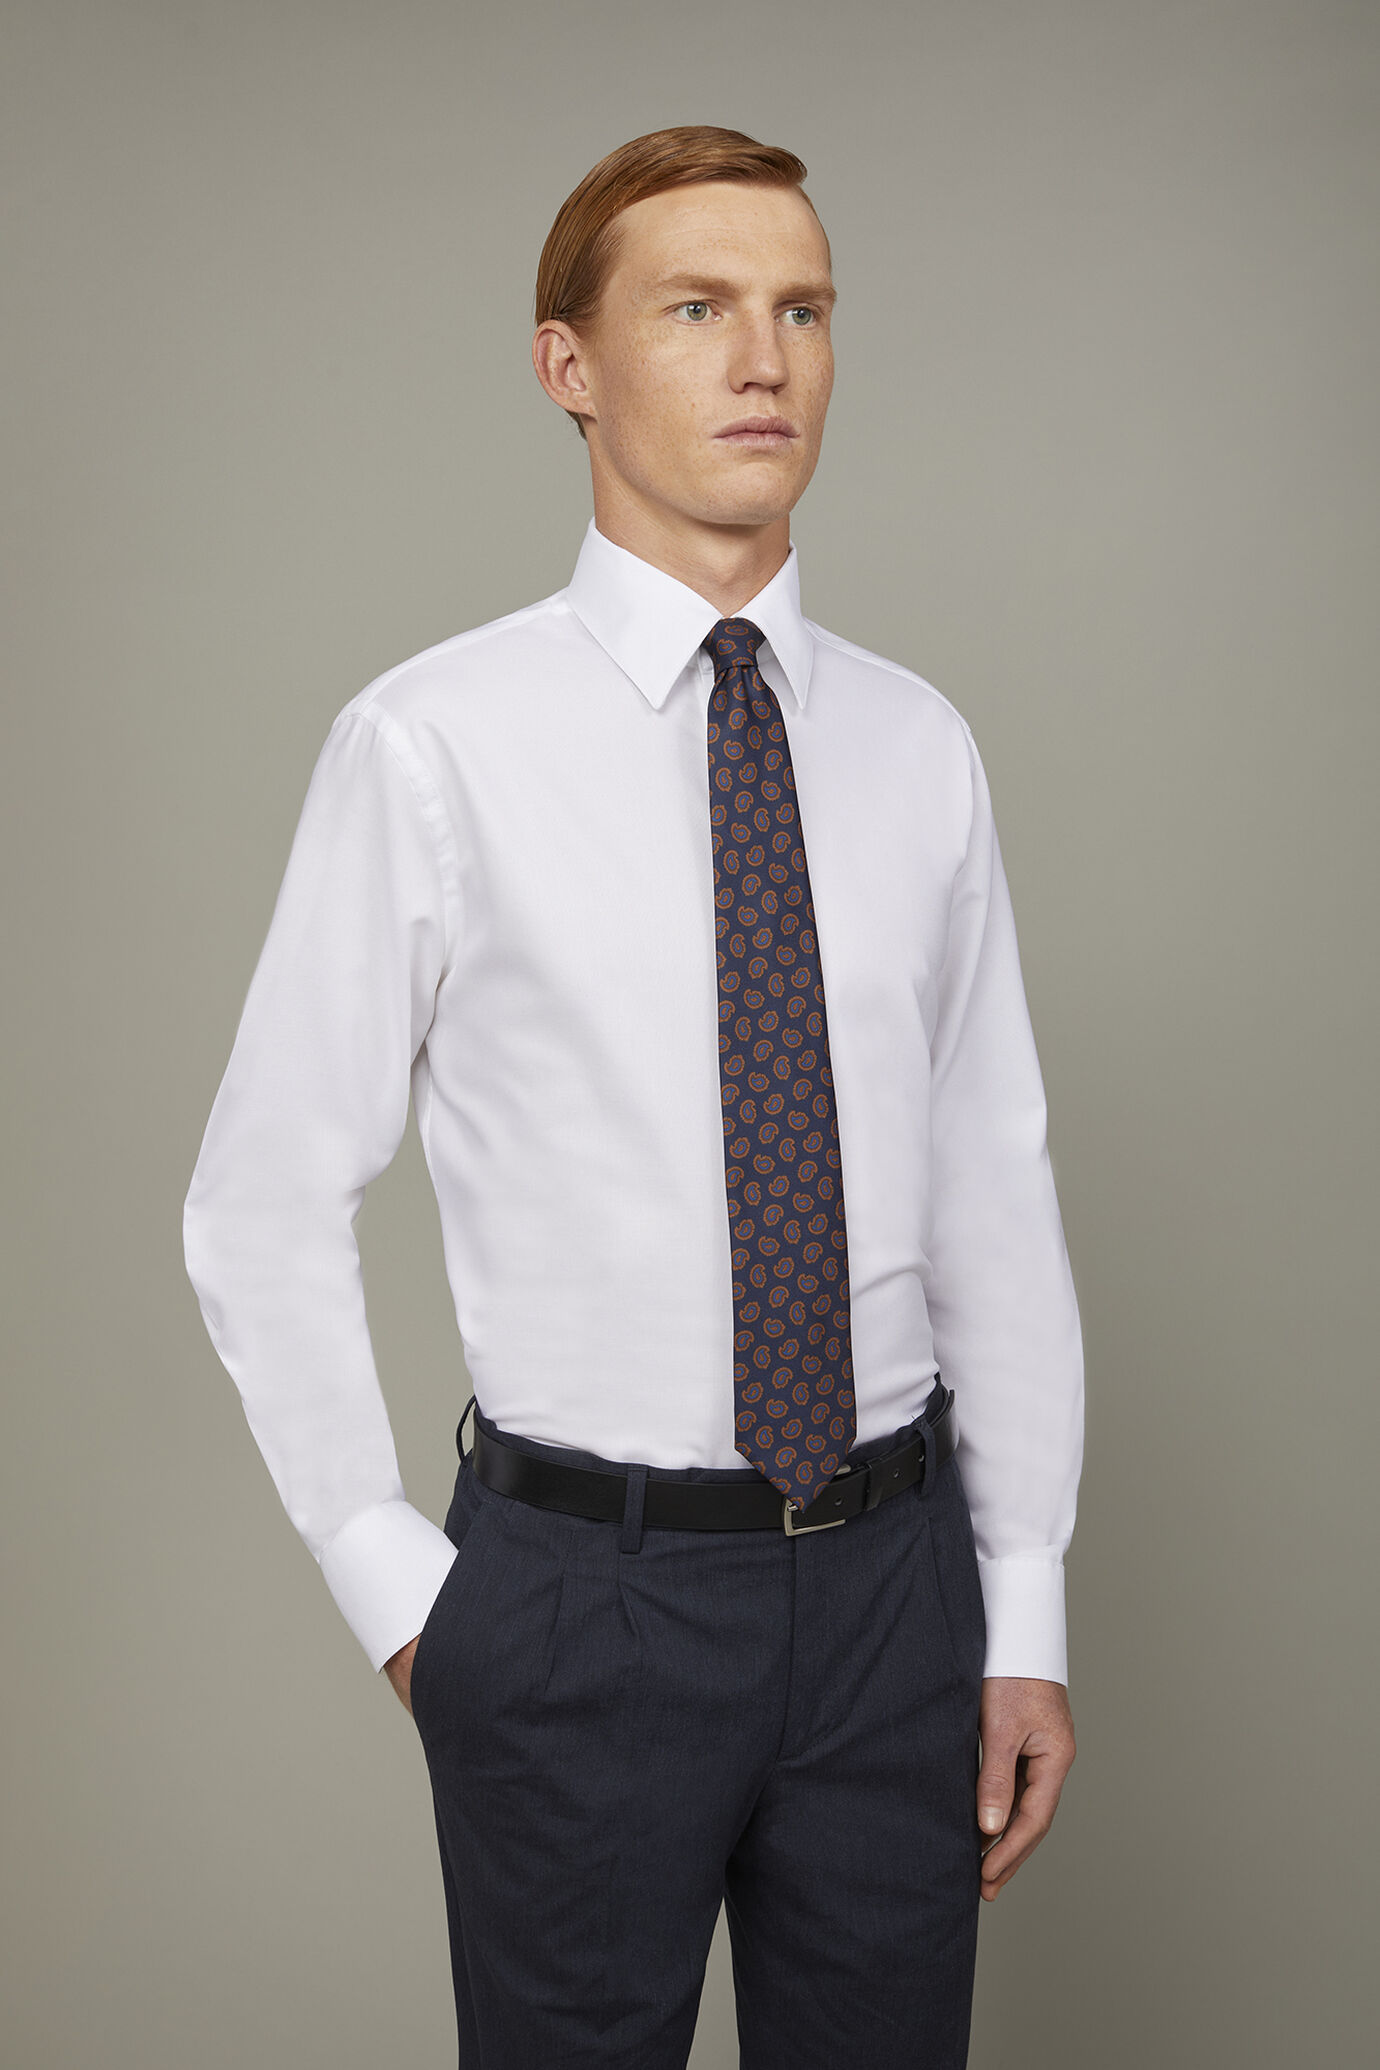 Men's shirt classic collar 100% cotton pinpoint fabric plain regualr fit